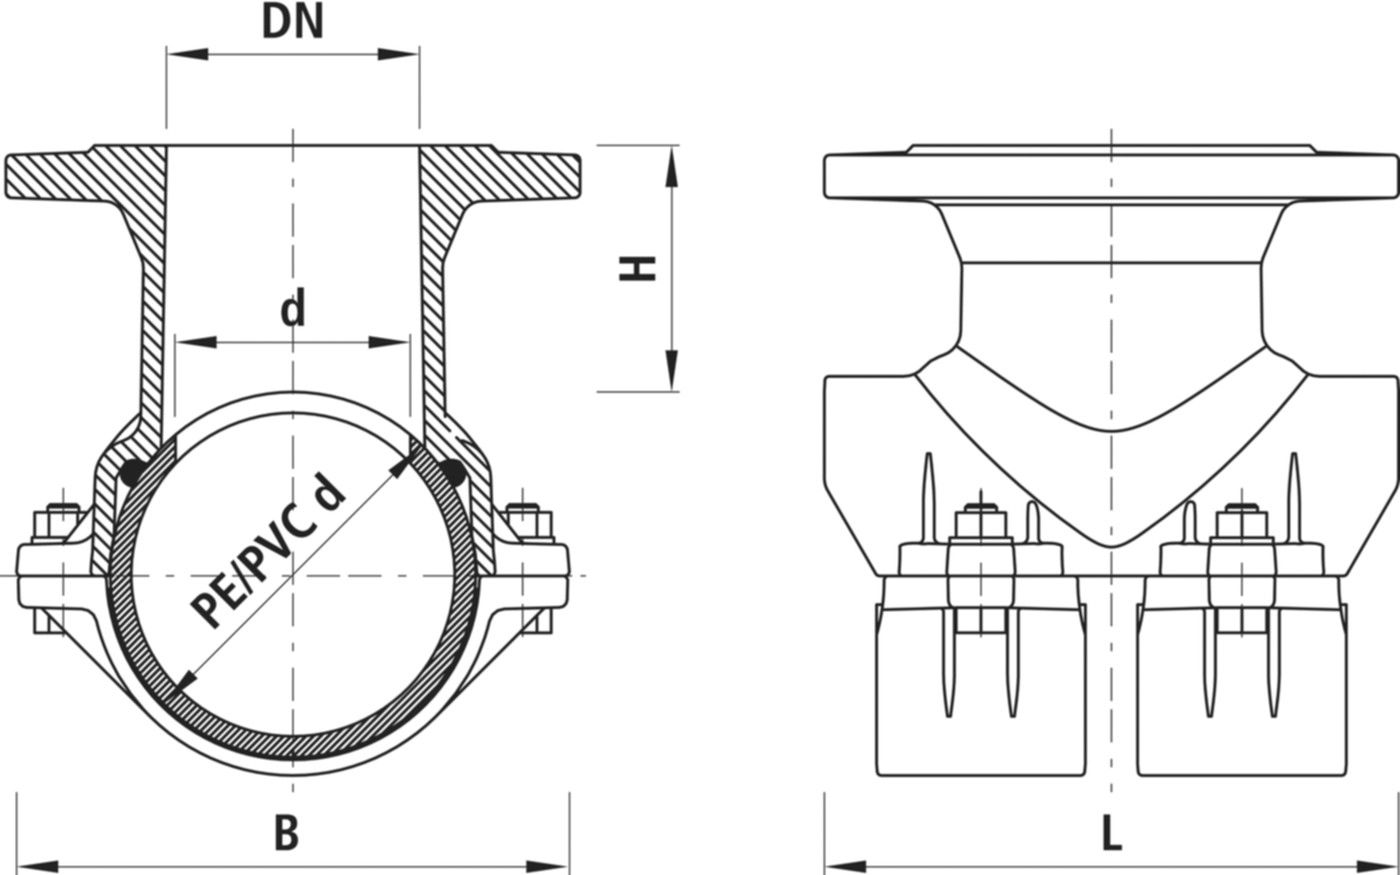 Haku-Anbohrschelle mit Flansch 5230 d 140mm / DN 80 - Hawle Hausanschluss- und Anbohrarmaturen